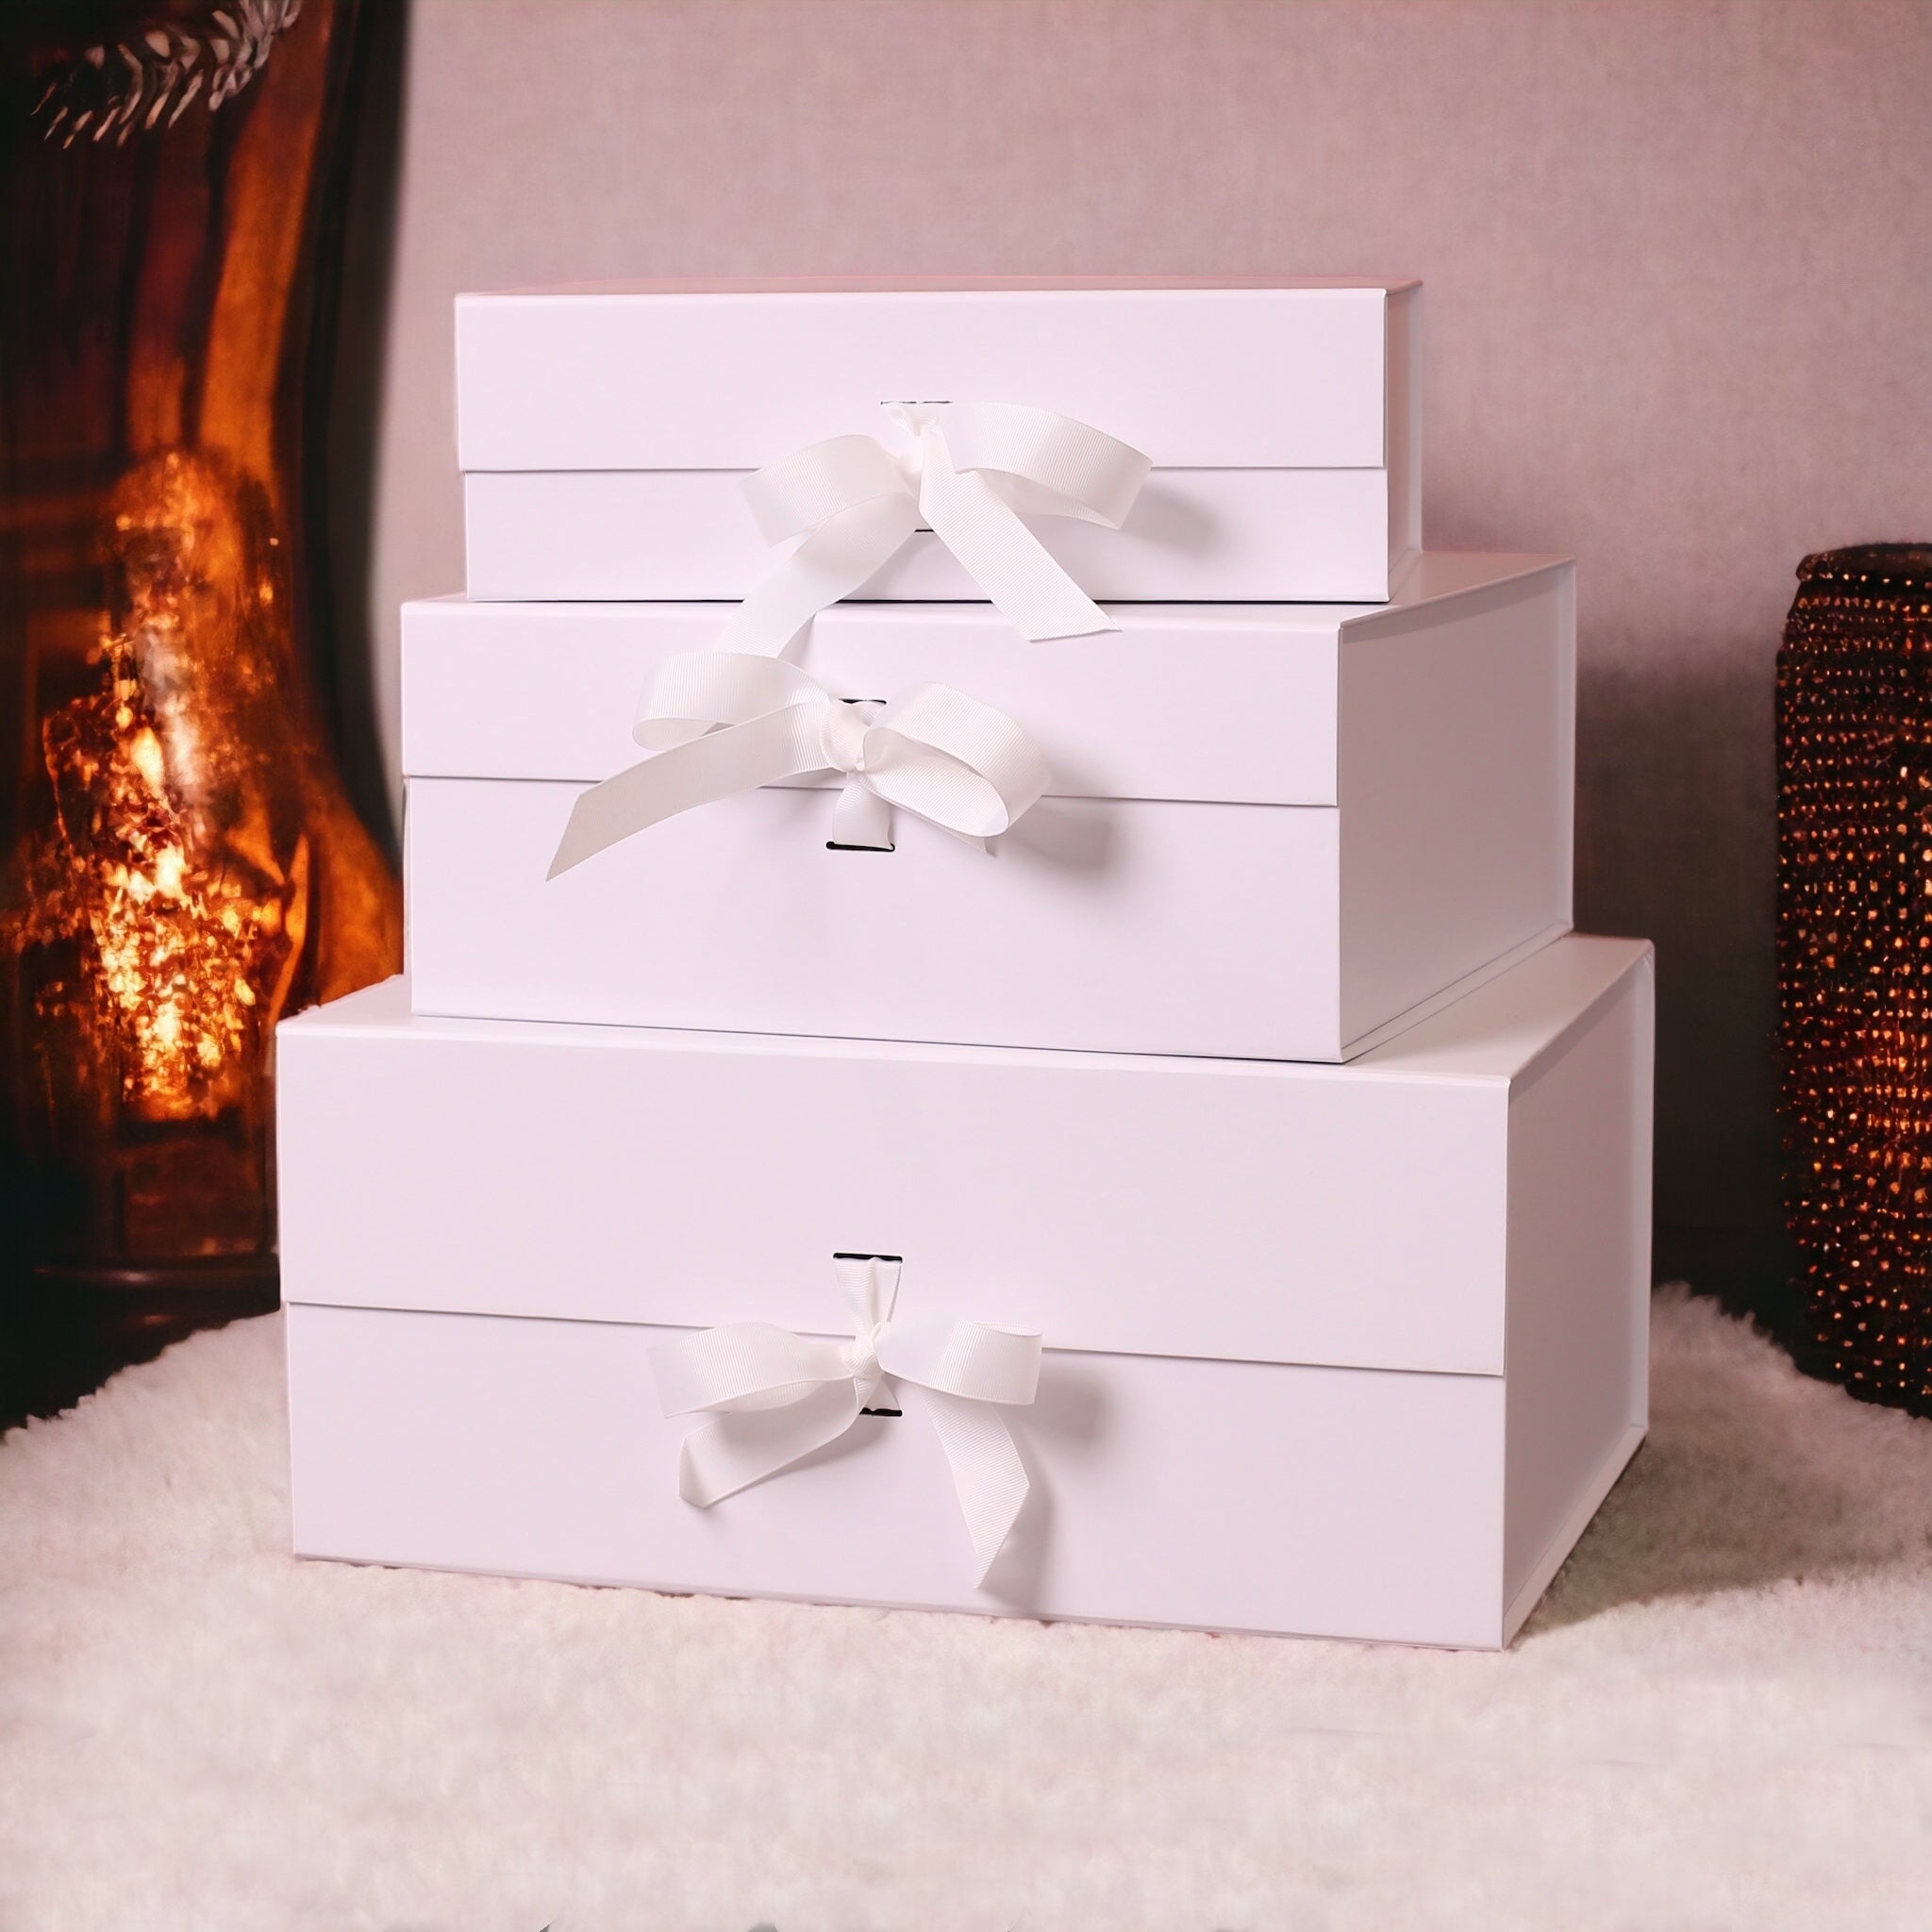 Red Wine Gift Box: Malbec & Chocs!